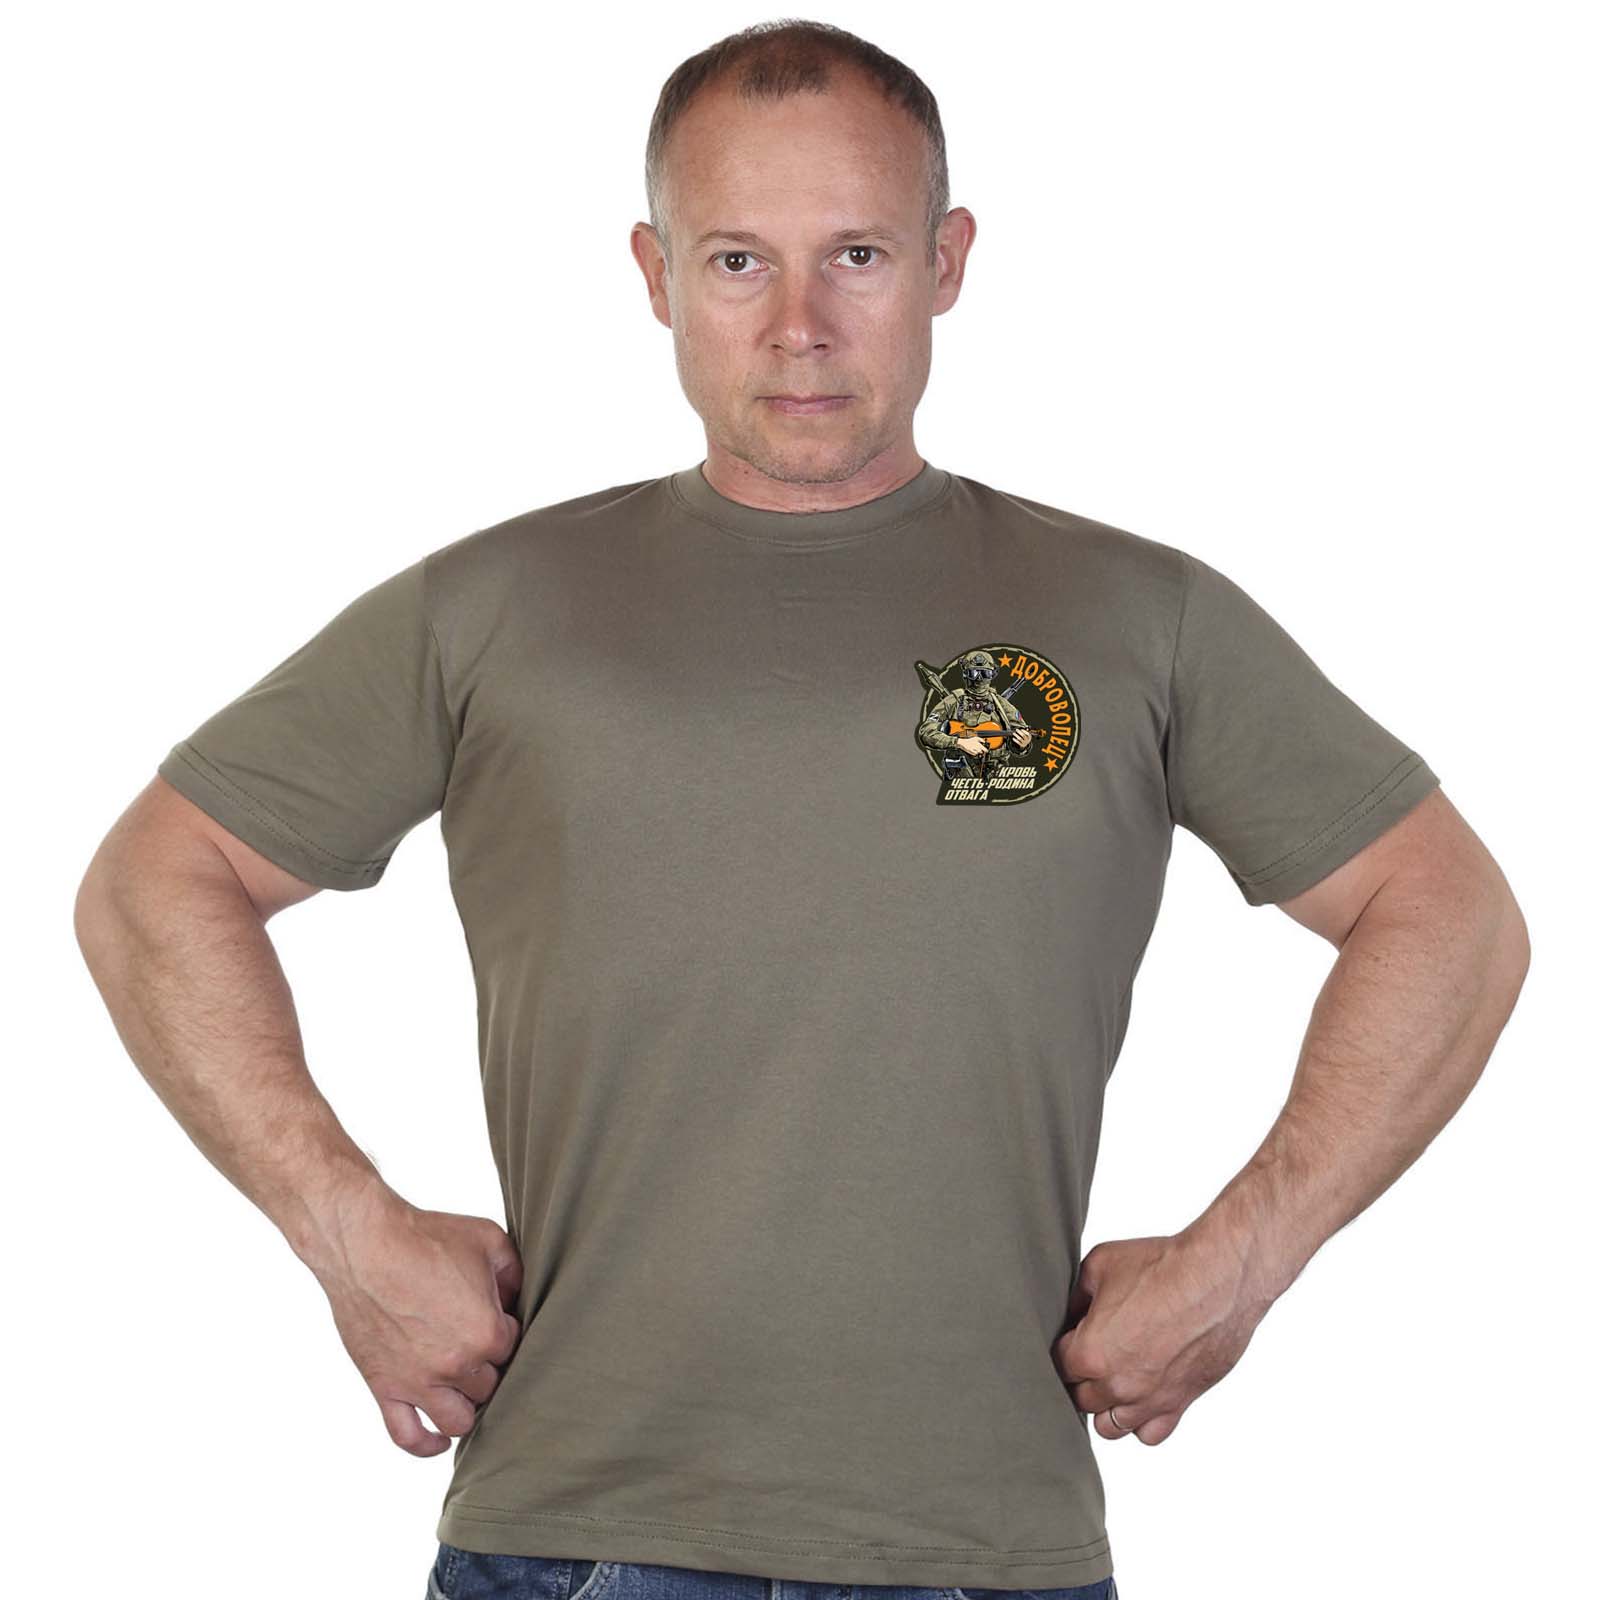 Купить мужскую оливковую футболку с термотрансфером Доброволец выгодно